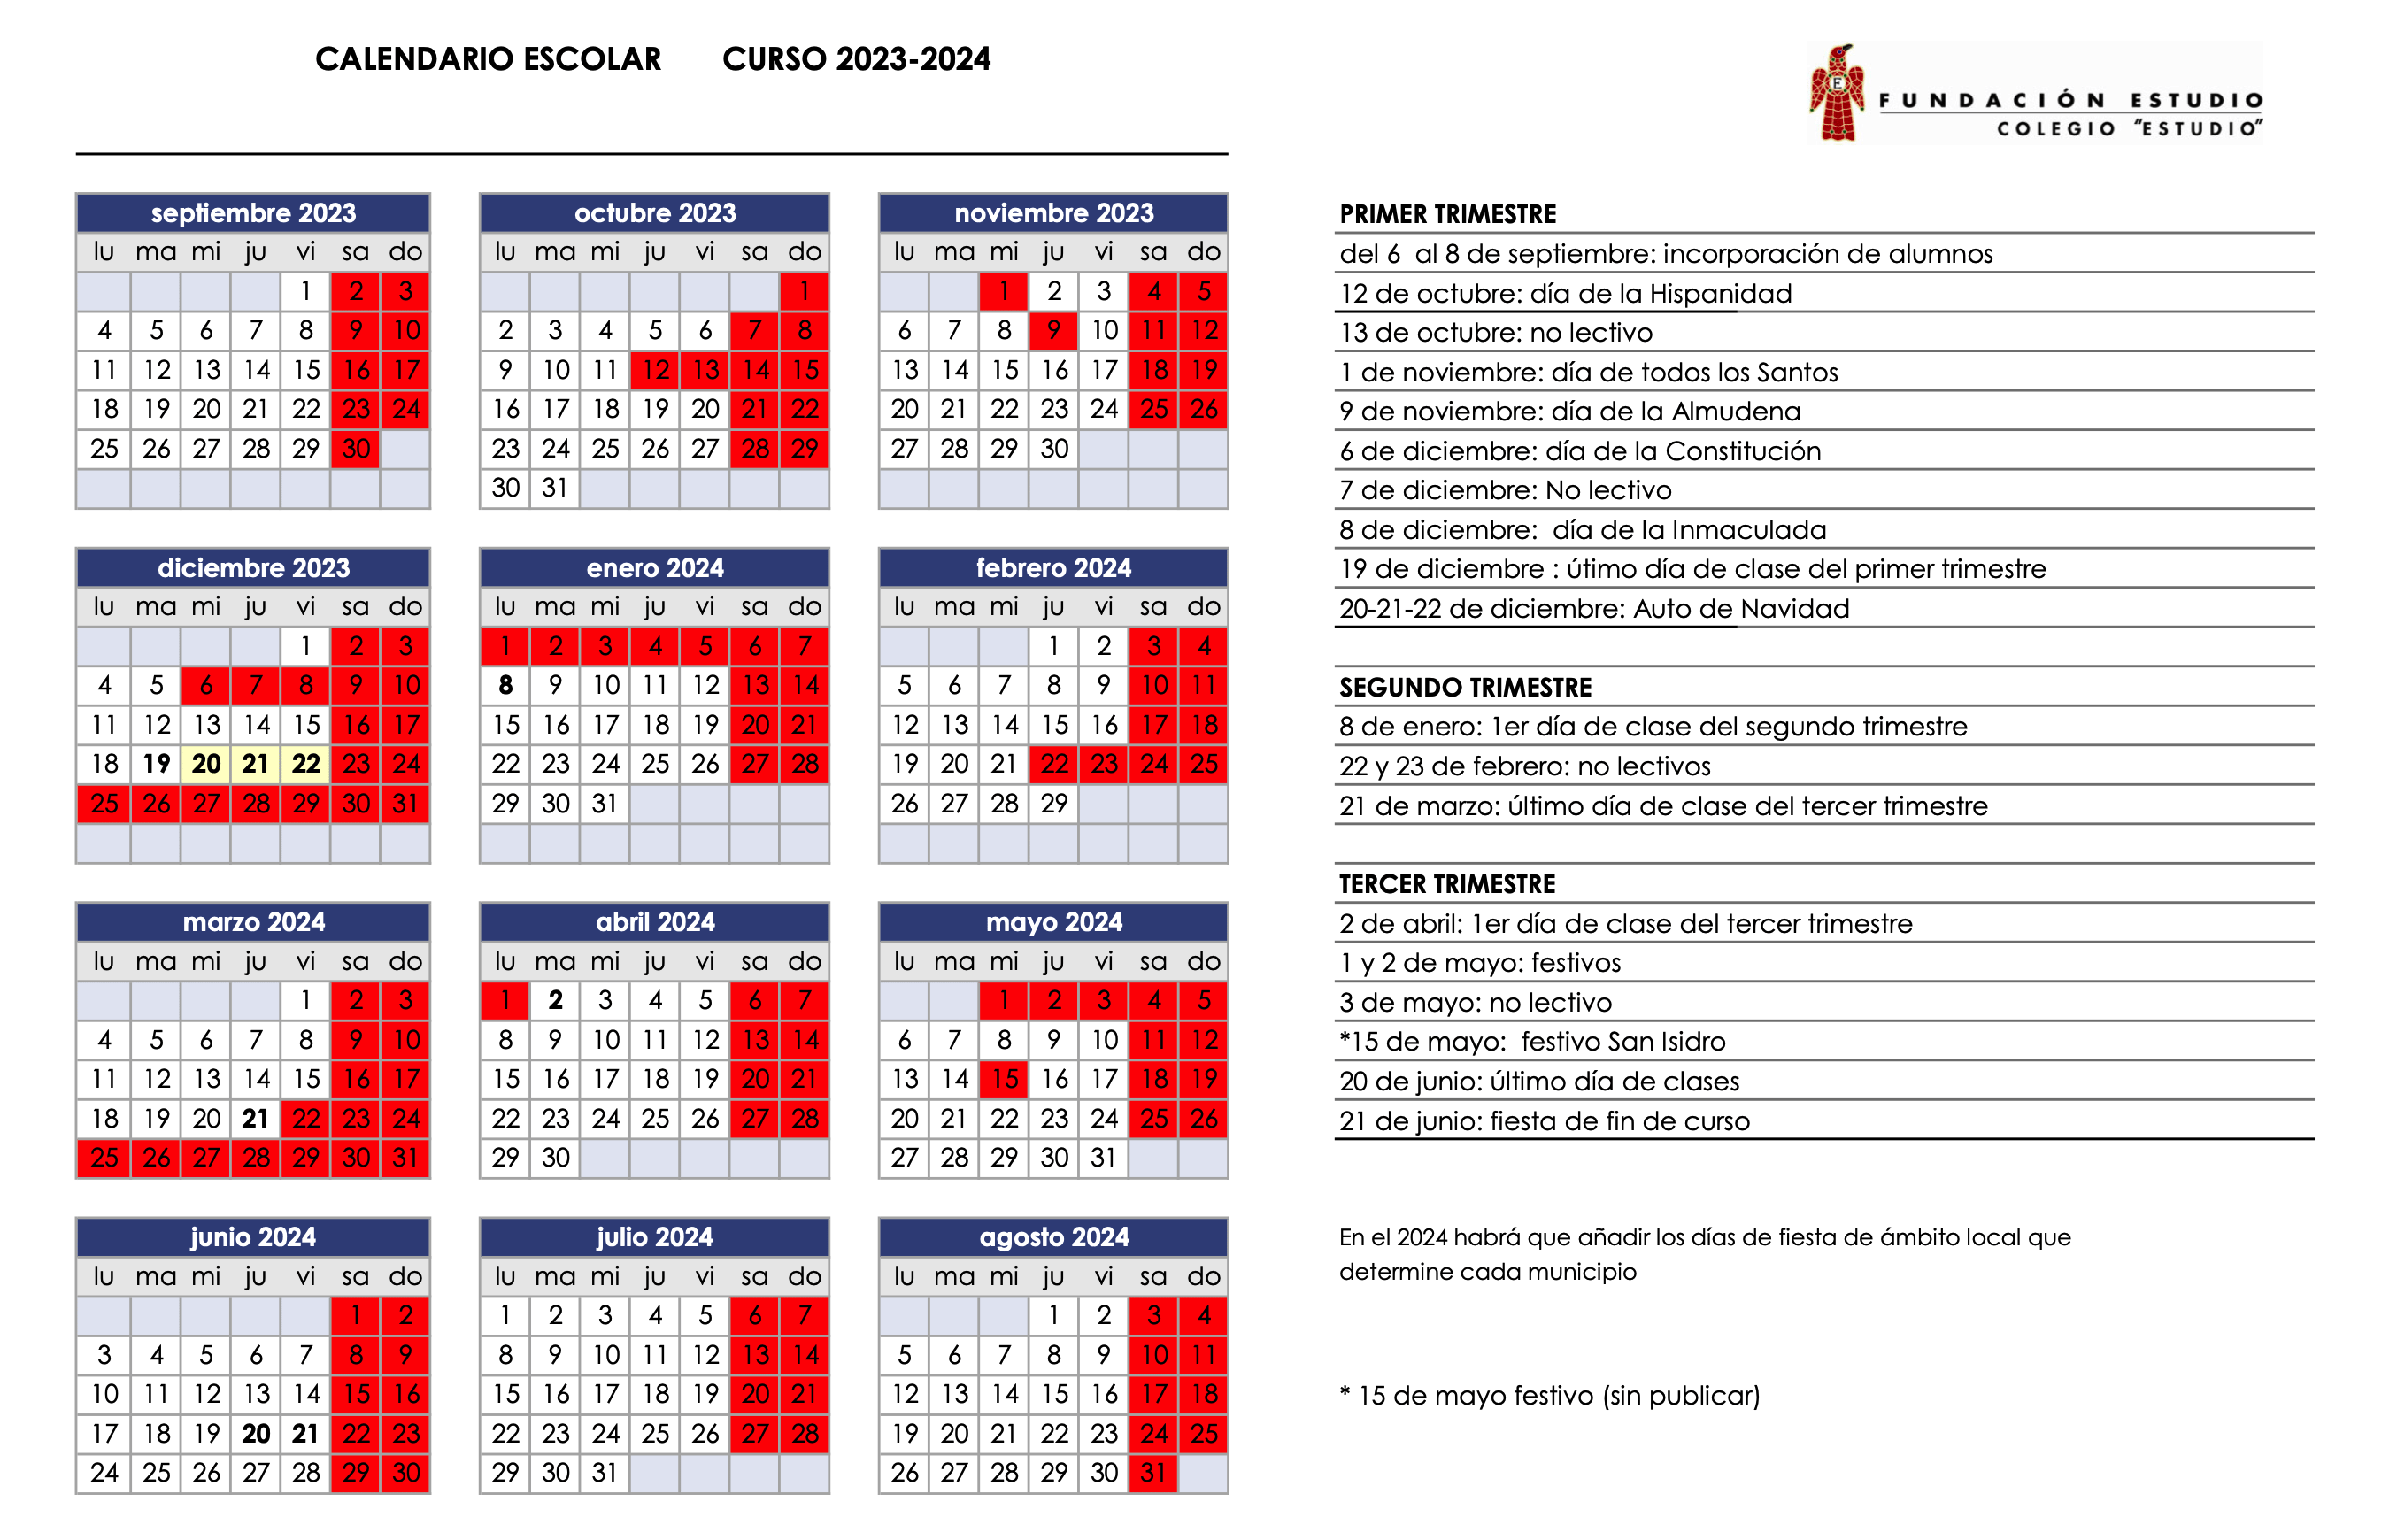 Calendario Escolar Calendario Escolar 2023 24